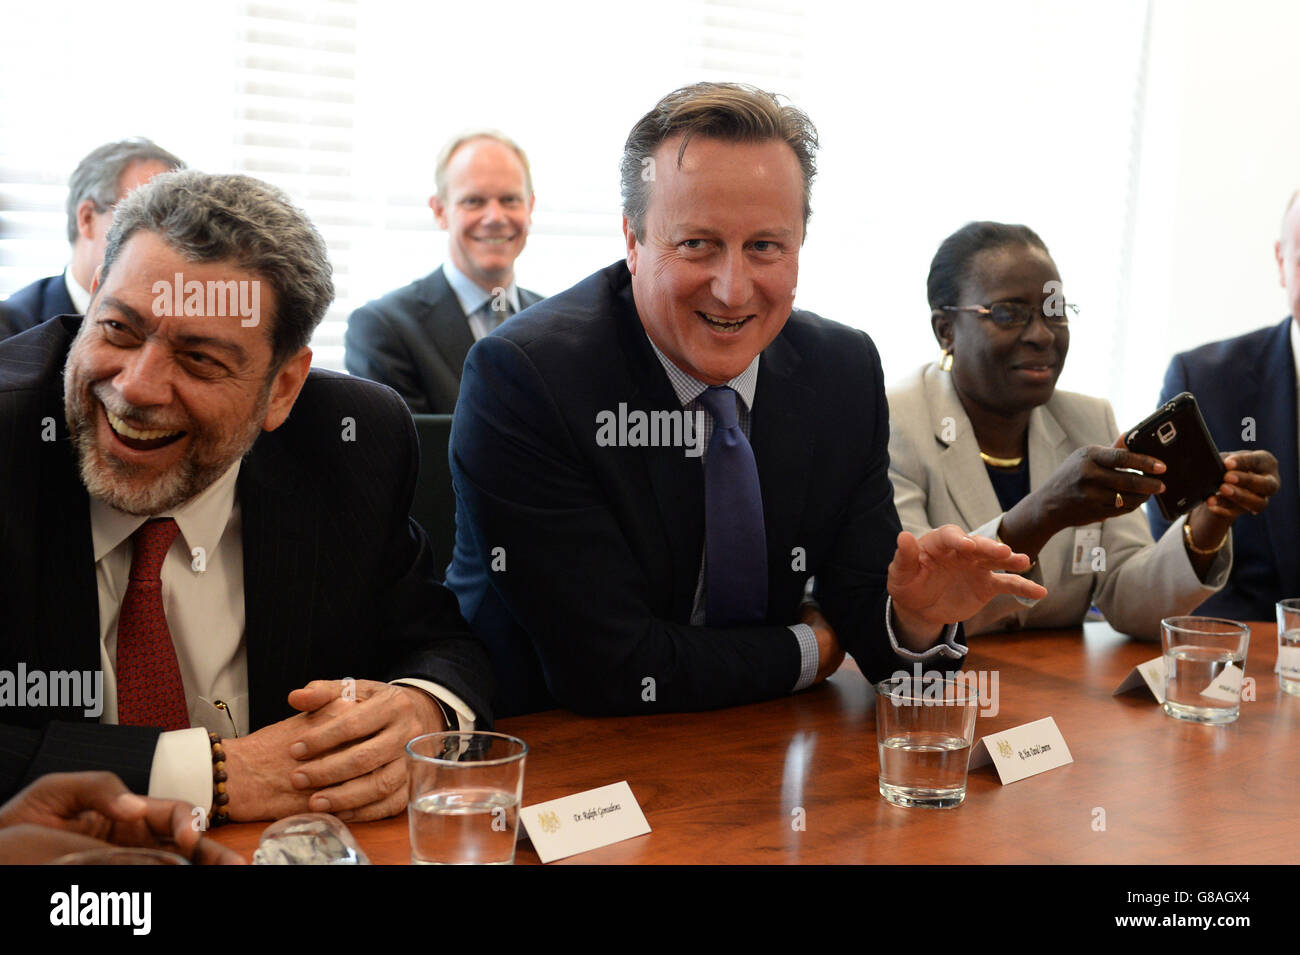 Le Premier ministre David Cameron rencontre les dirigeants de divers pays des Caraïbes à l'Assemblée générale des Nations Unies à New York. Banque D'Images